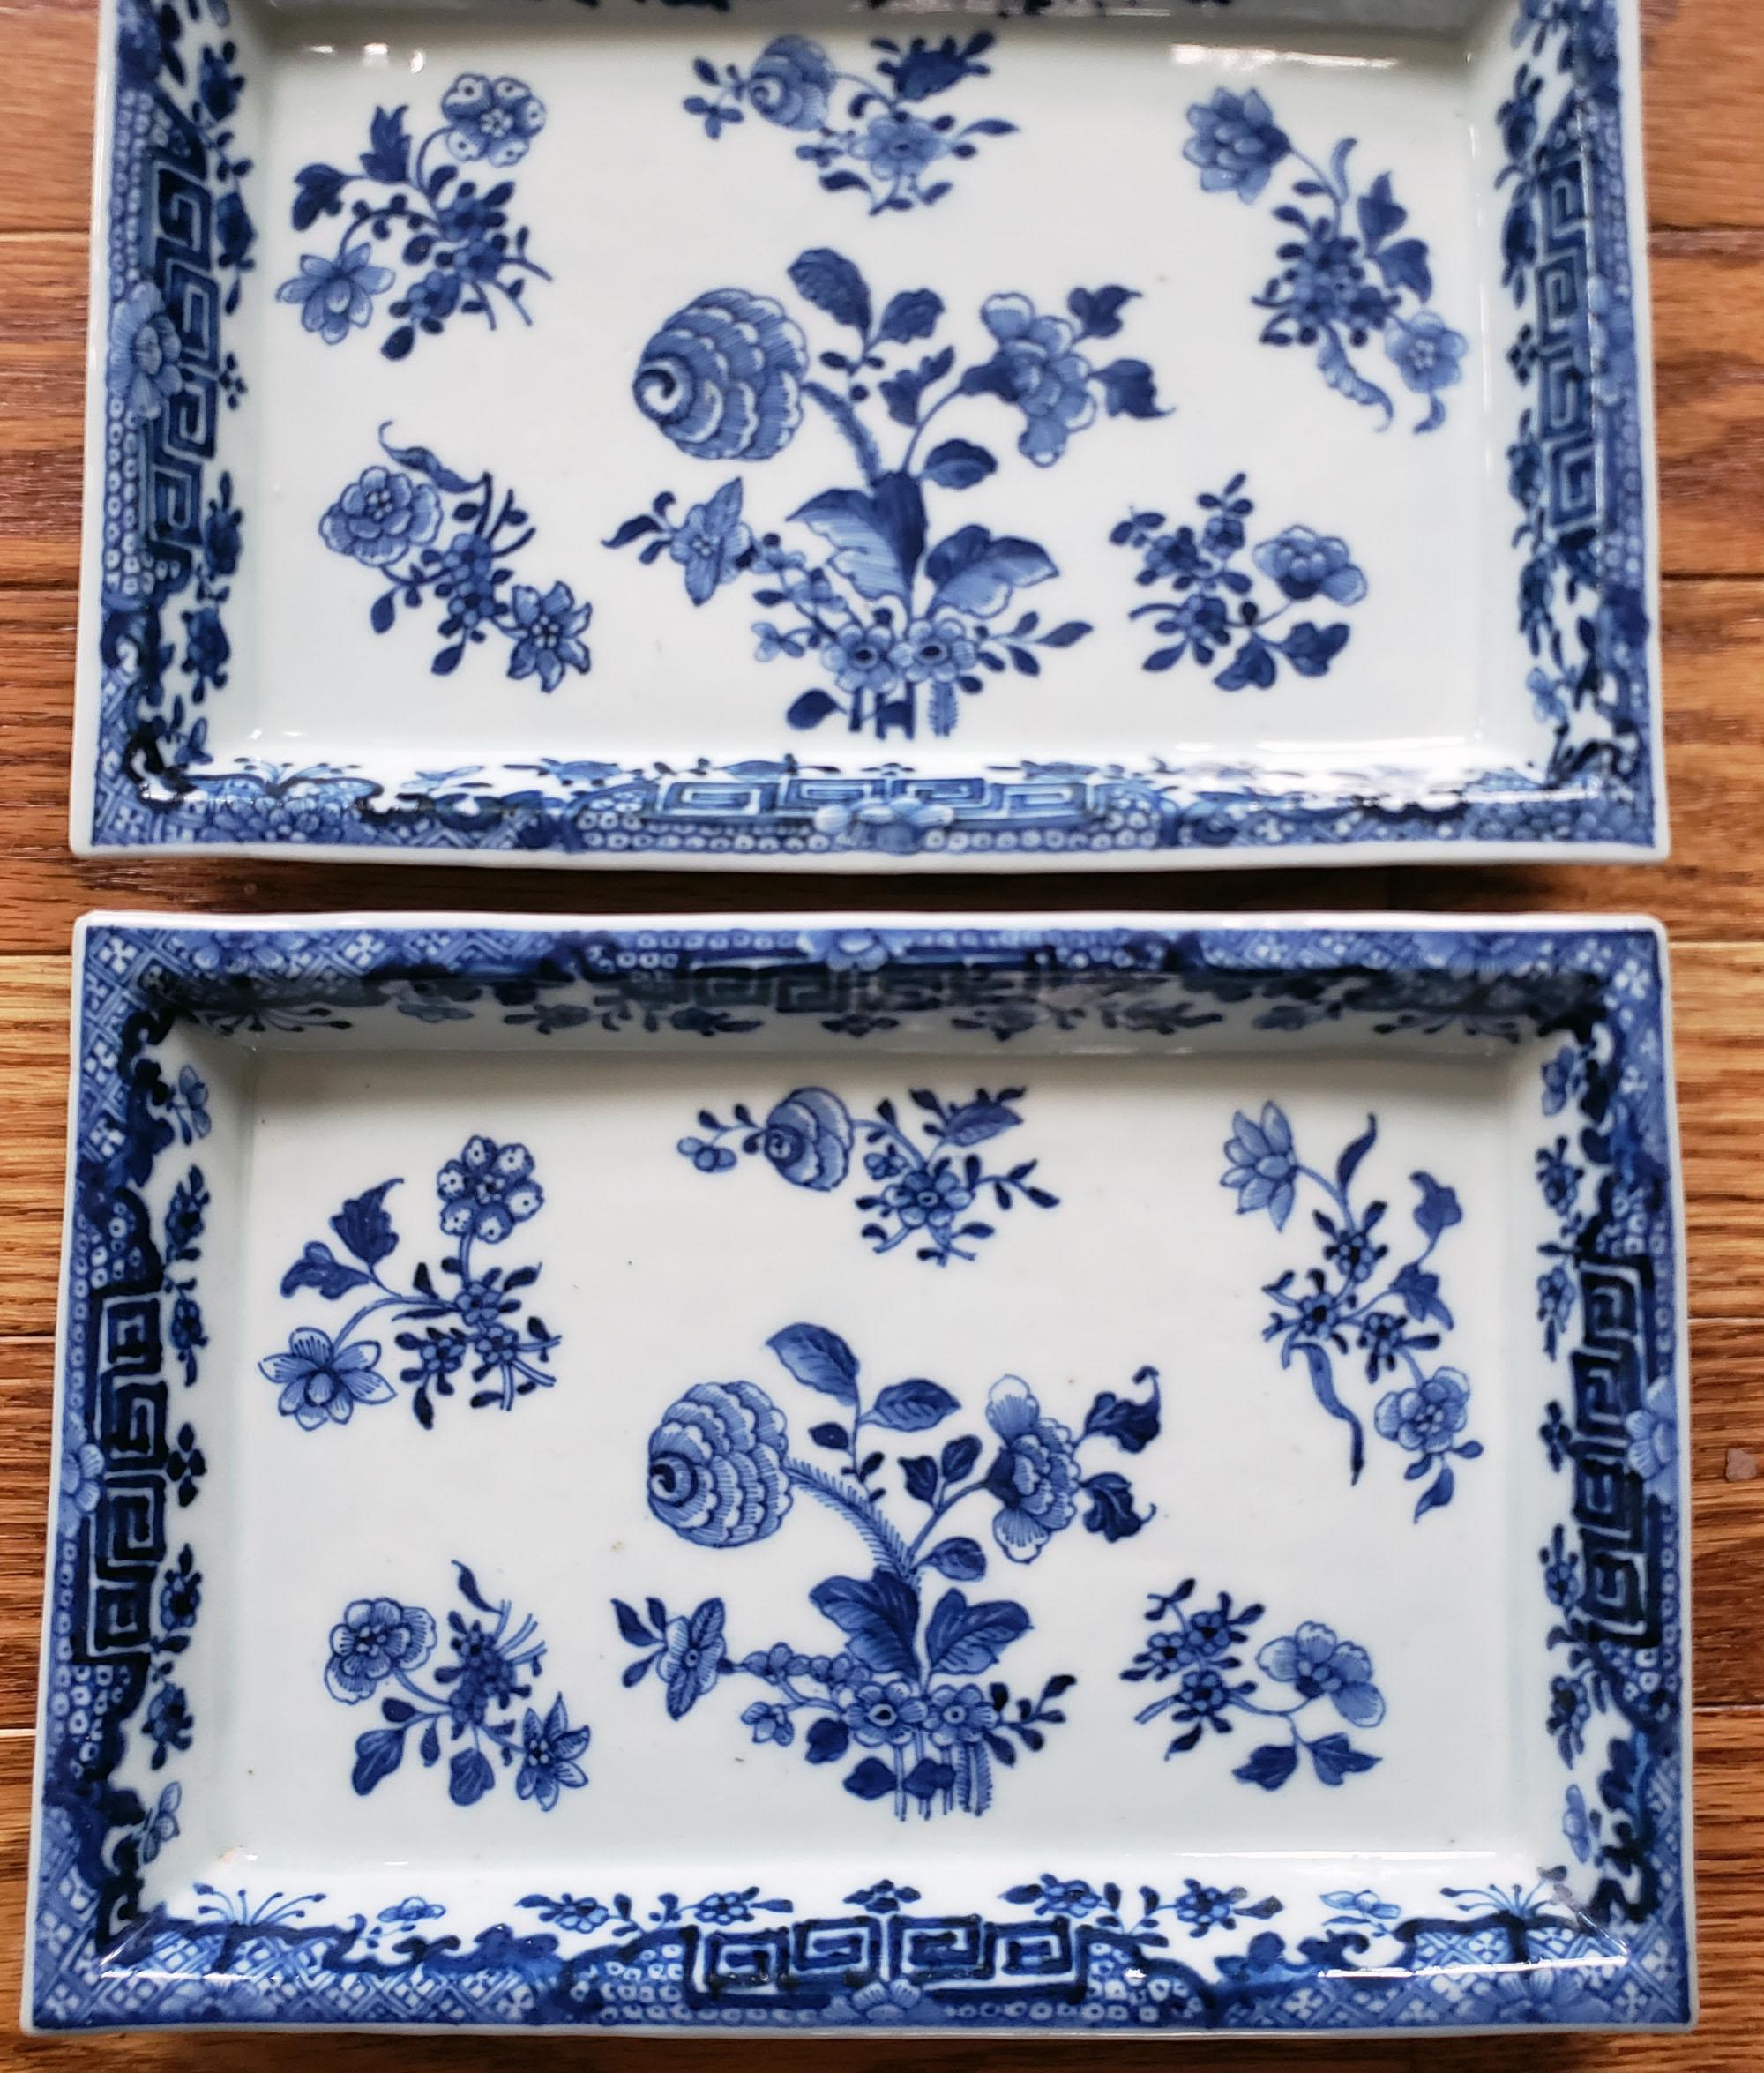 Chinese Export Porcelain Underglaze Blue & White Rectangular Botanical Dishes 1